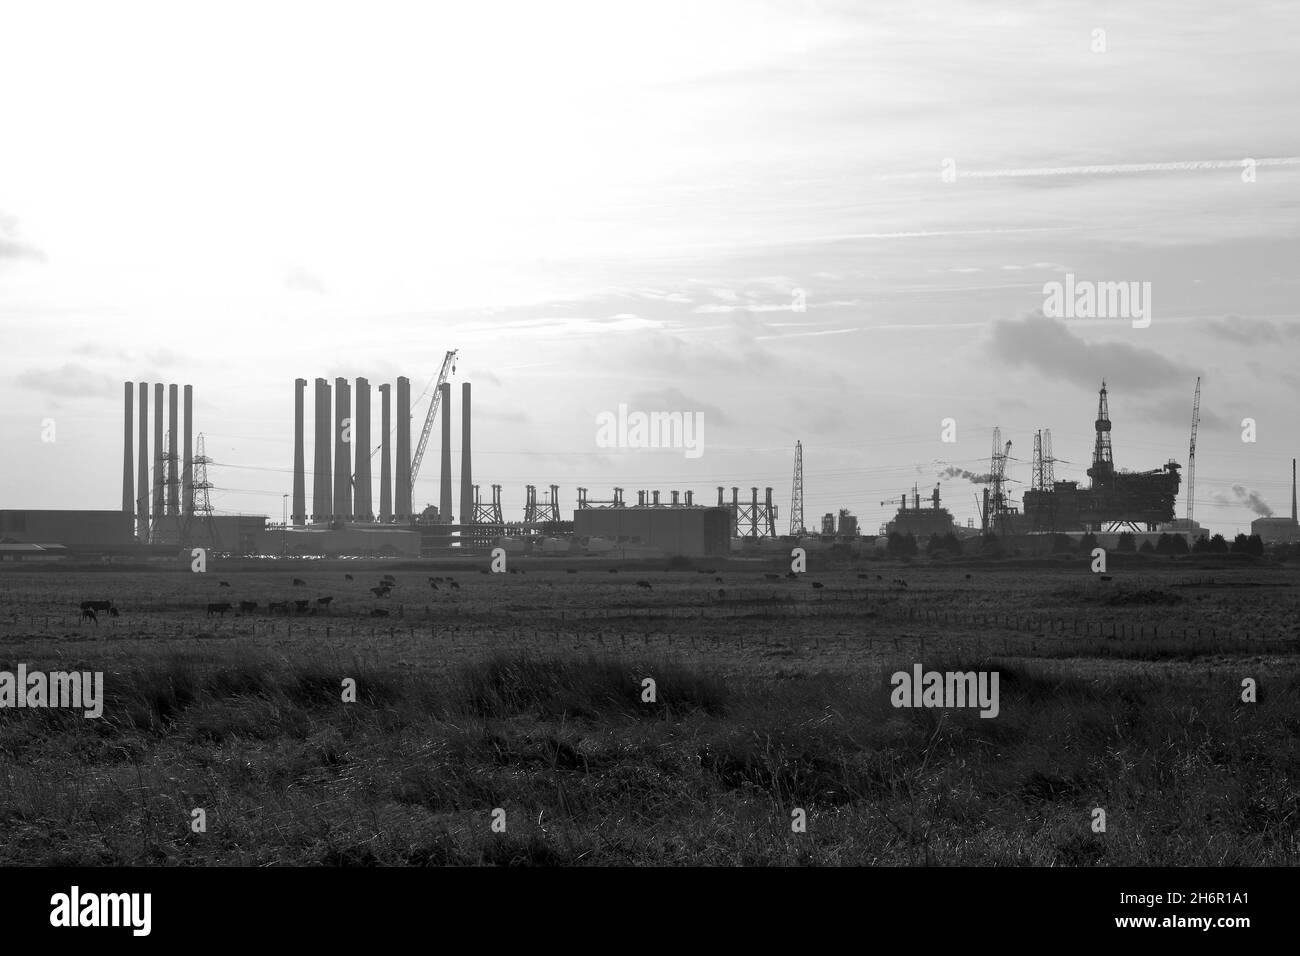 Schwarz-Weiß-Bild der Ölplattform Brent-Alpha, die demontiert wird, und Windturbinenstangen für Seagreen am Able Seaton Port, Teesside Freeport. Stockfoto